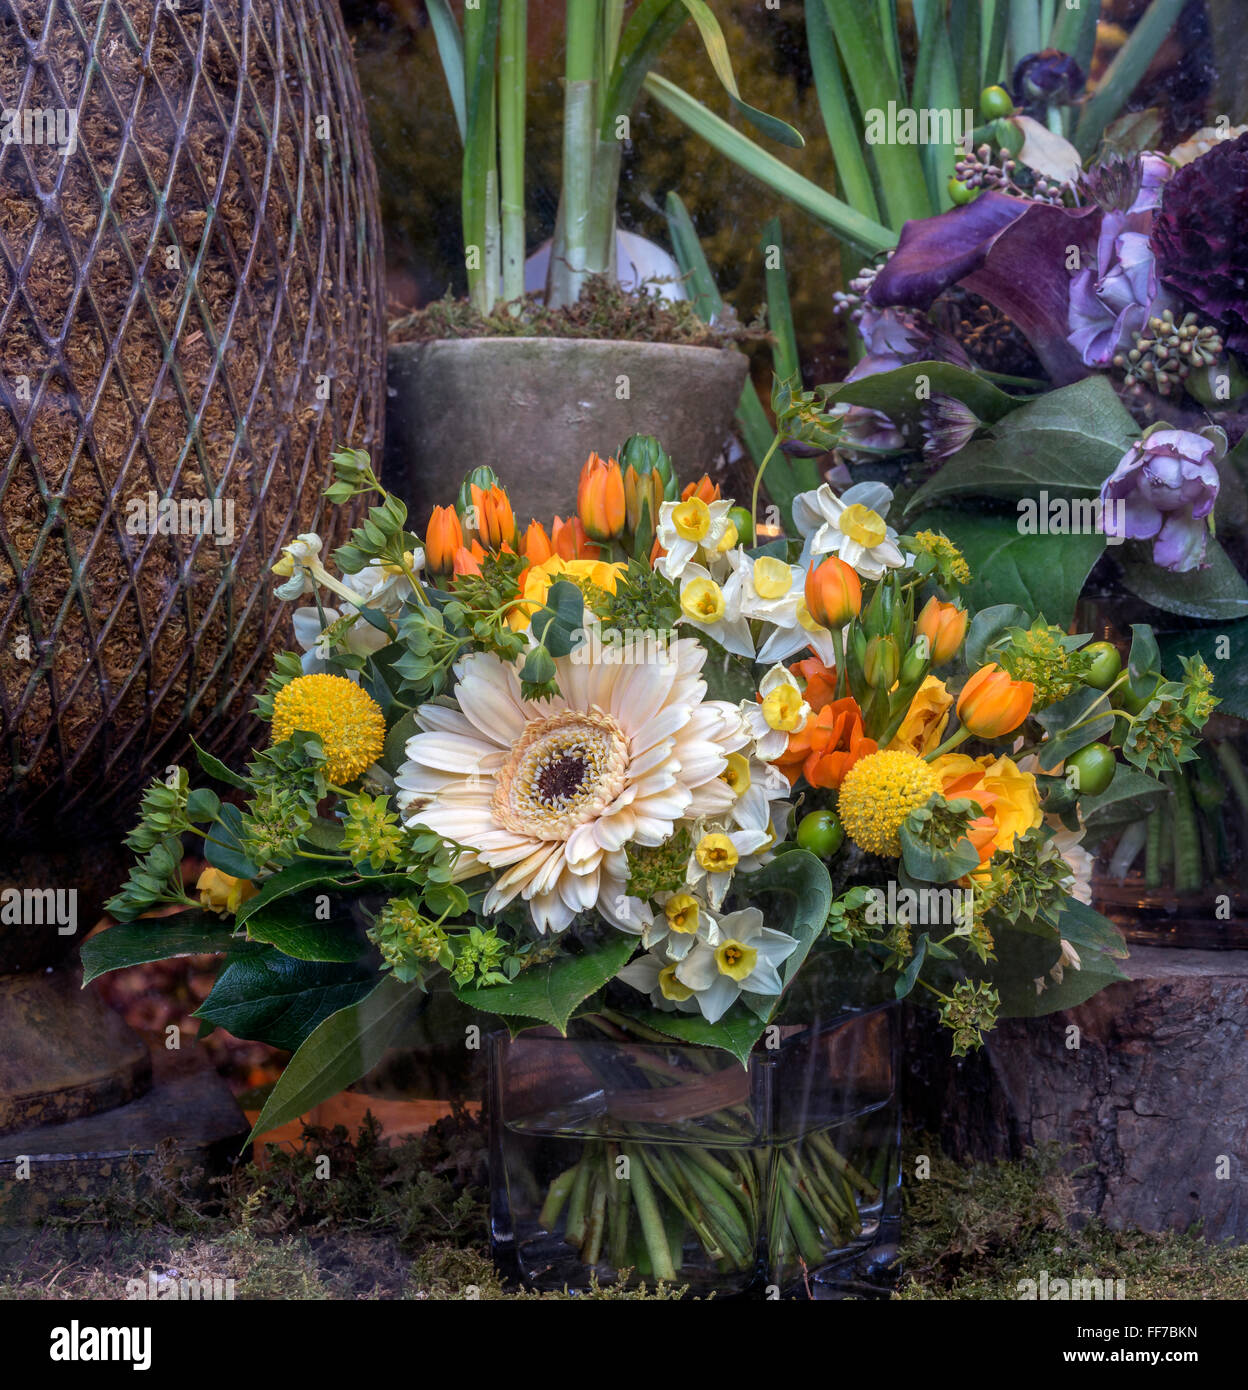 Blumenstrauß ist eine Sammlung von Blumen in einer kreativen Anordnung Stockfoto